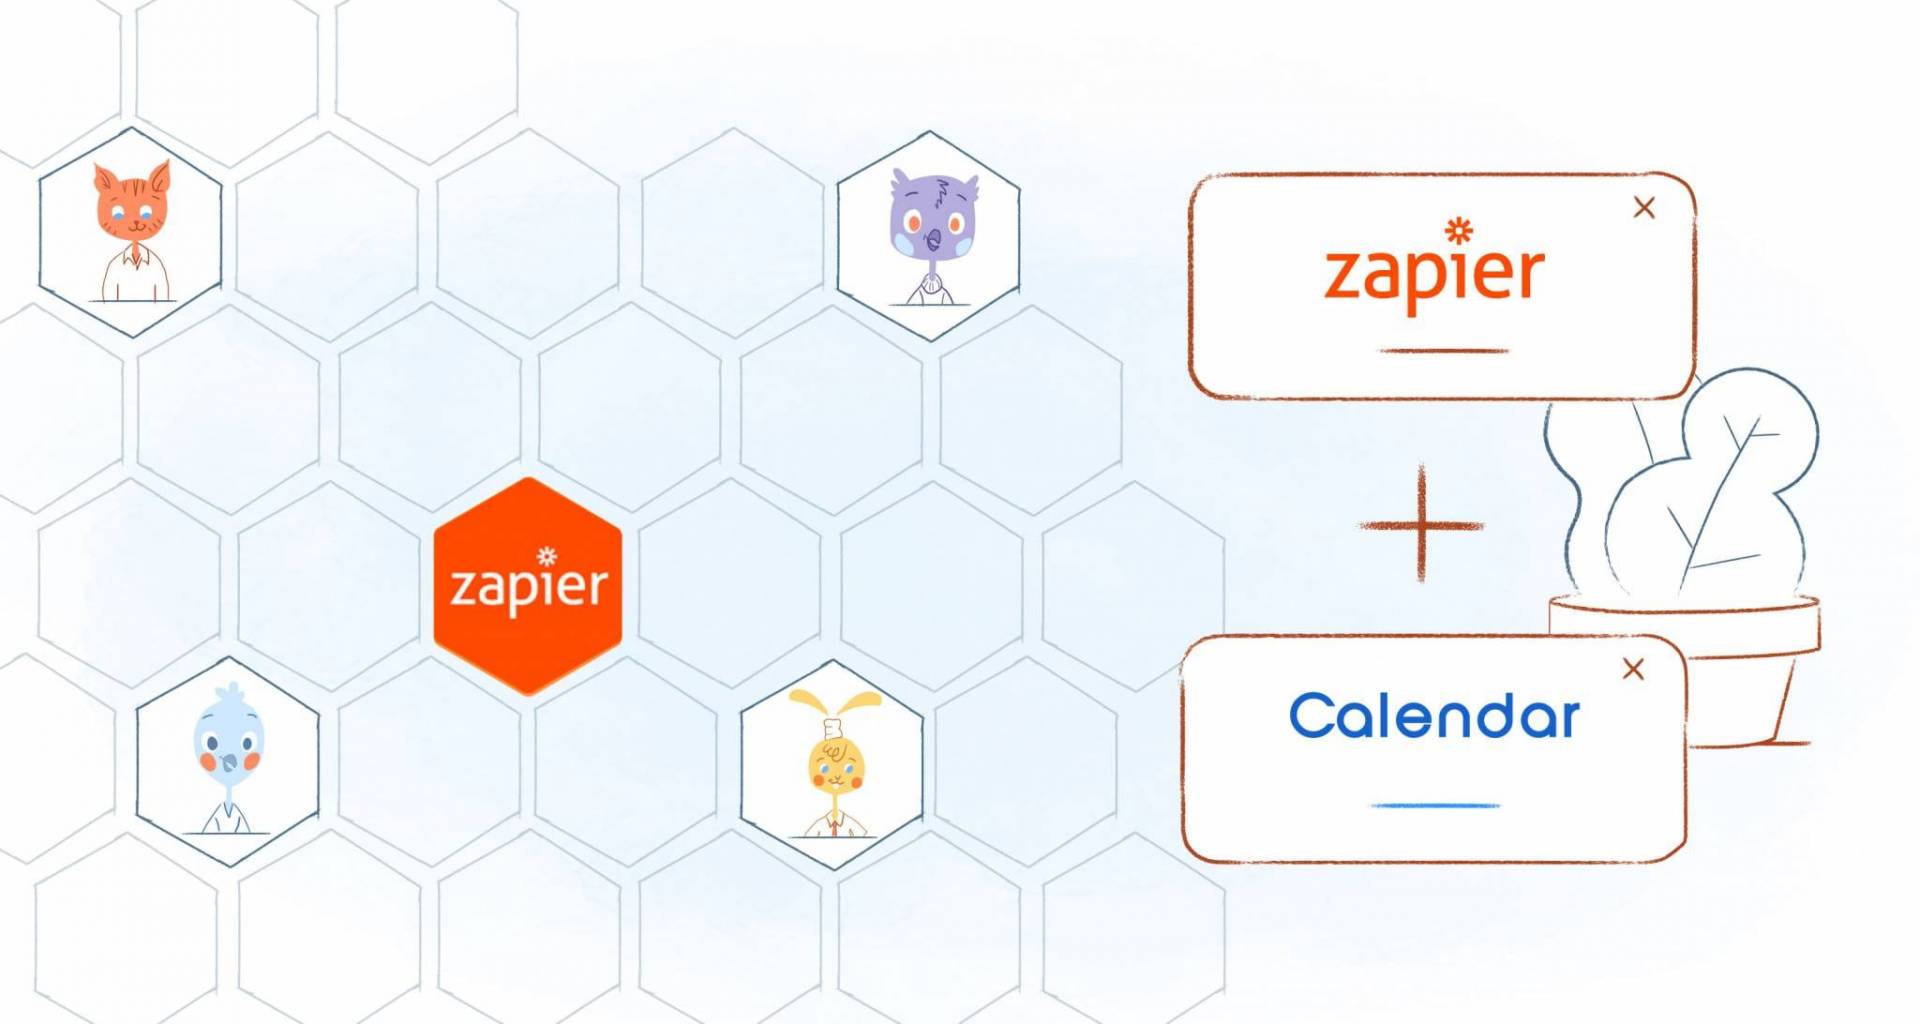 Calendar Joins List of Zapier Integrations